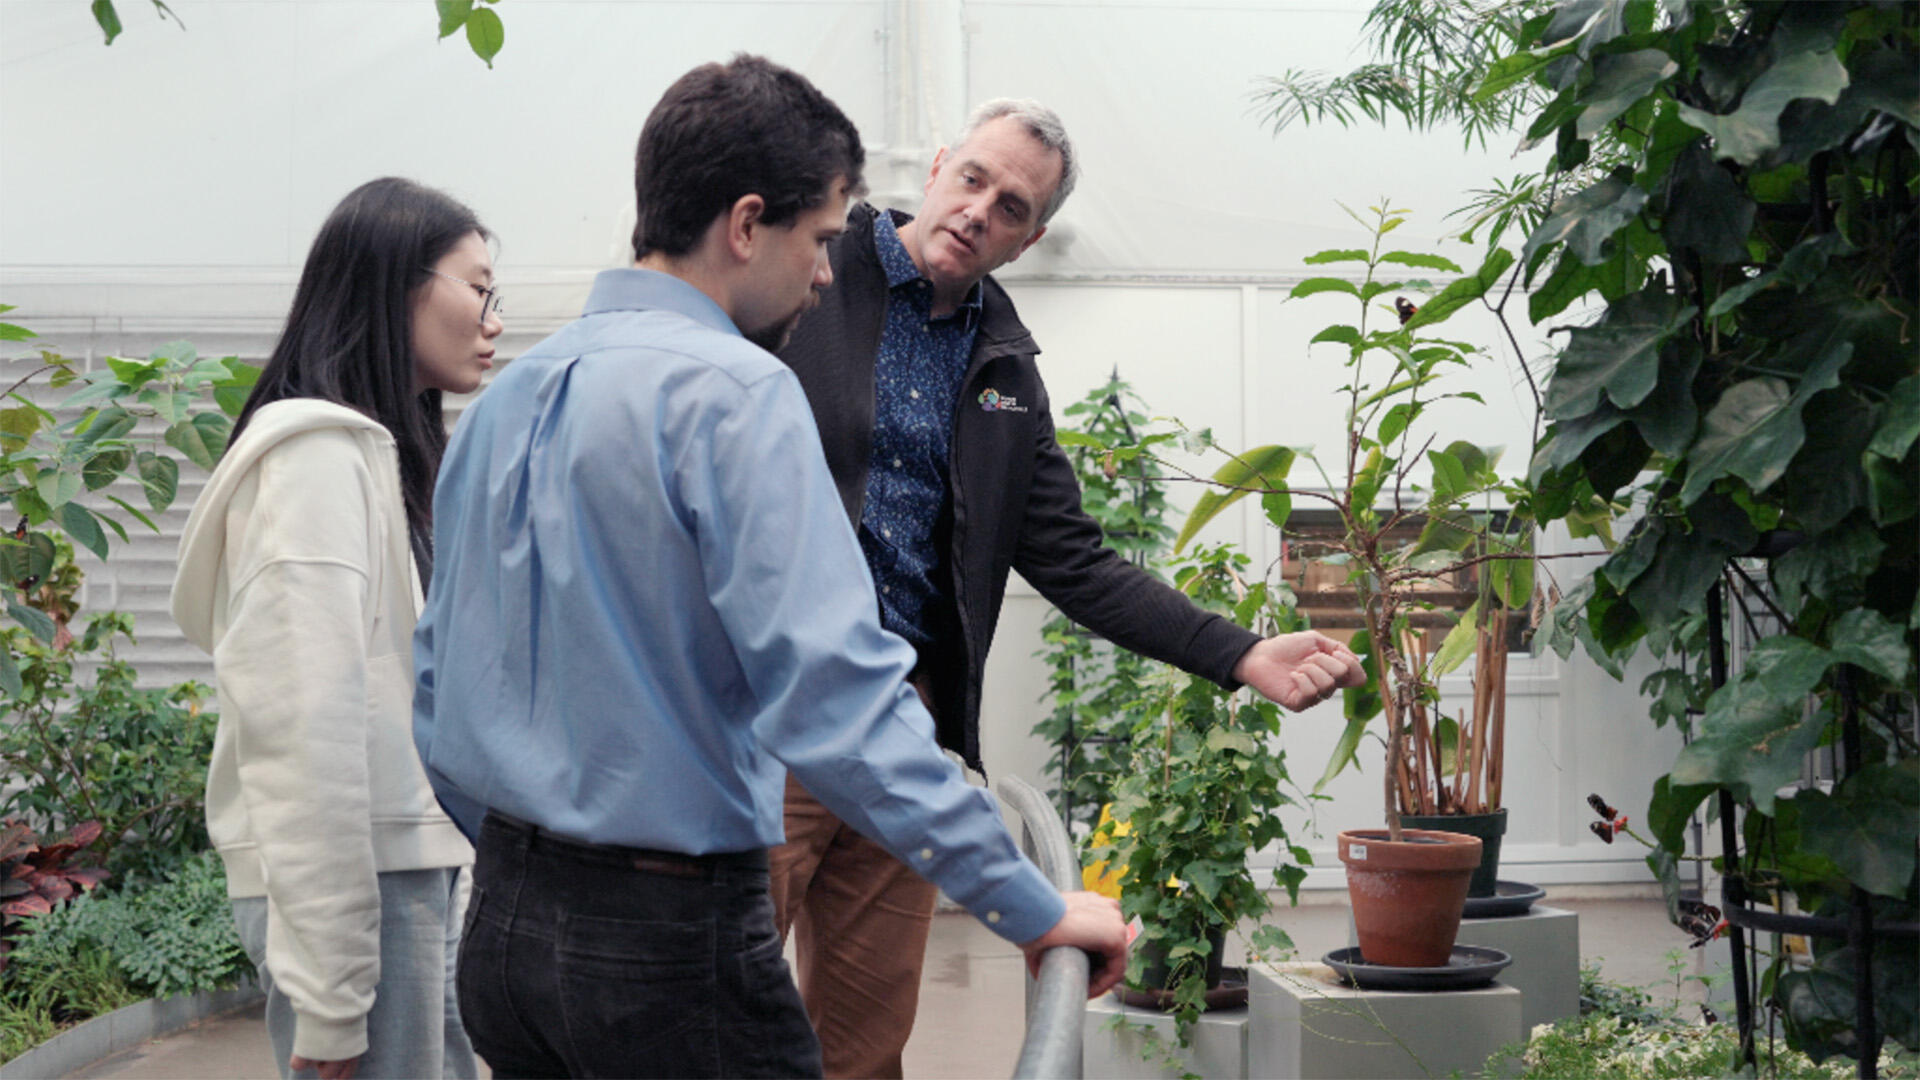 Trois personnes discutent et examinent des plantes.